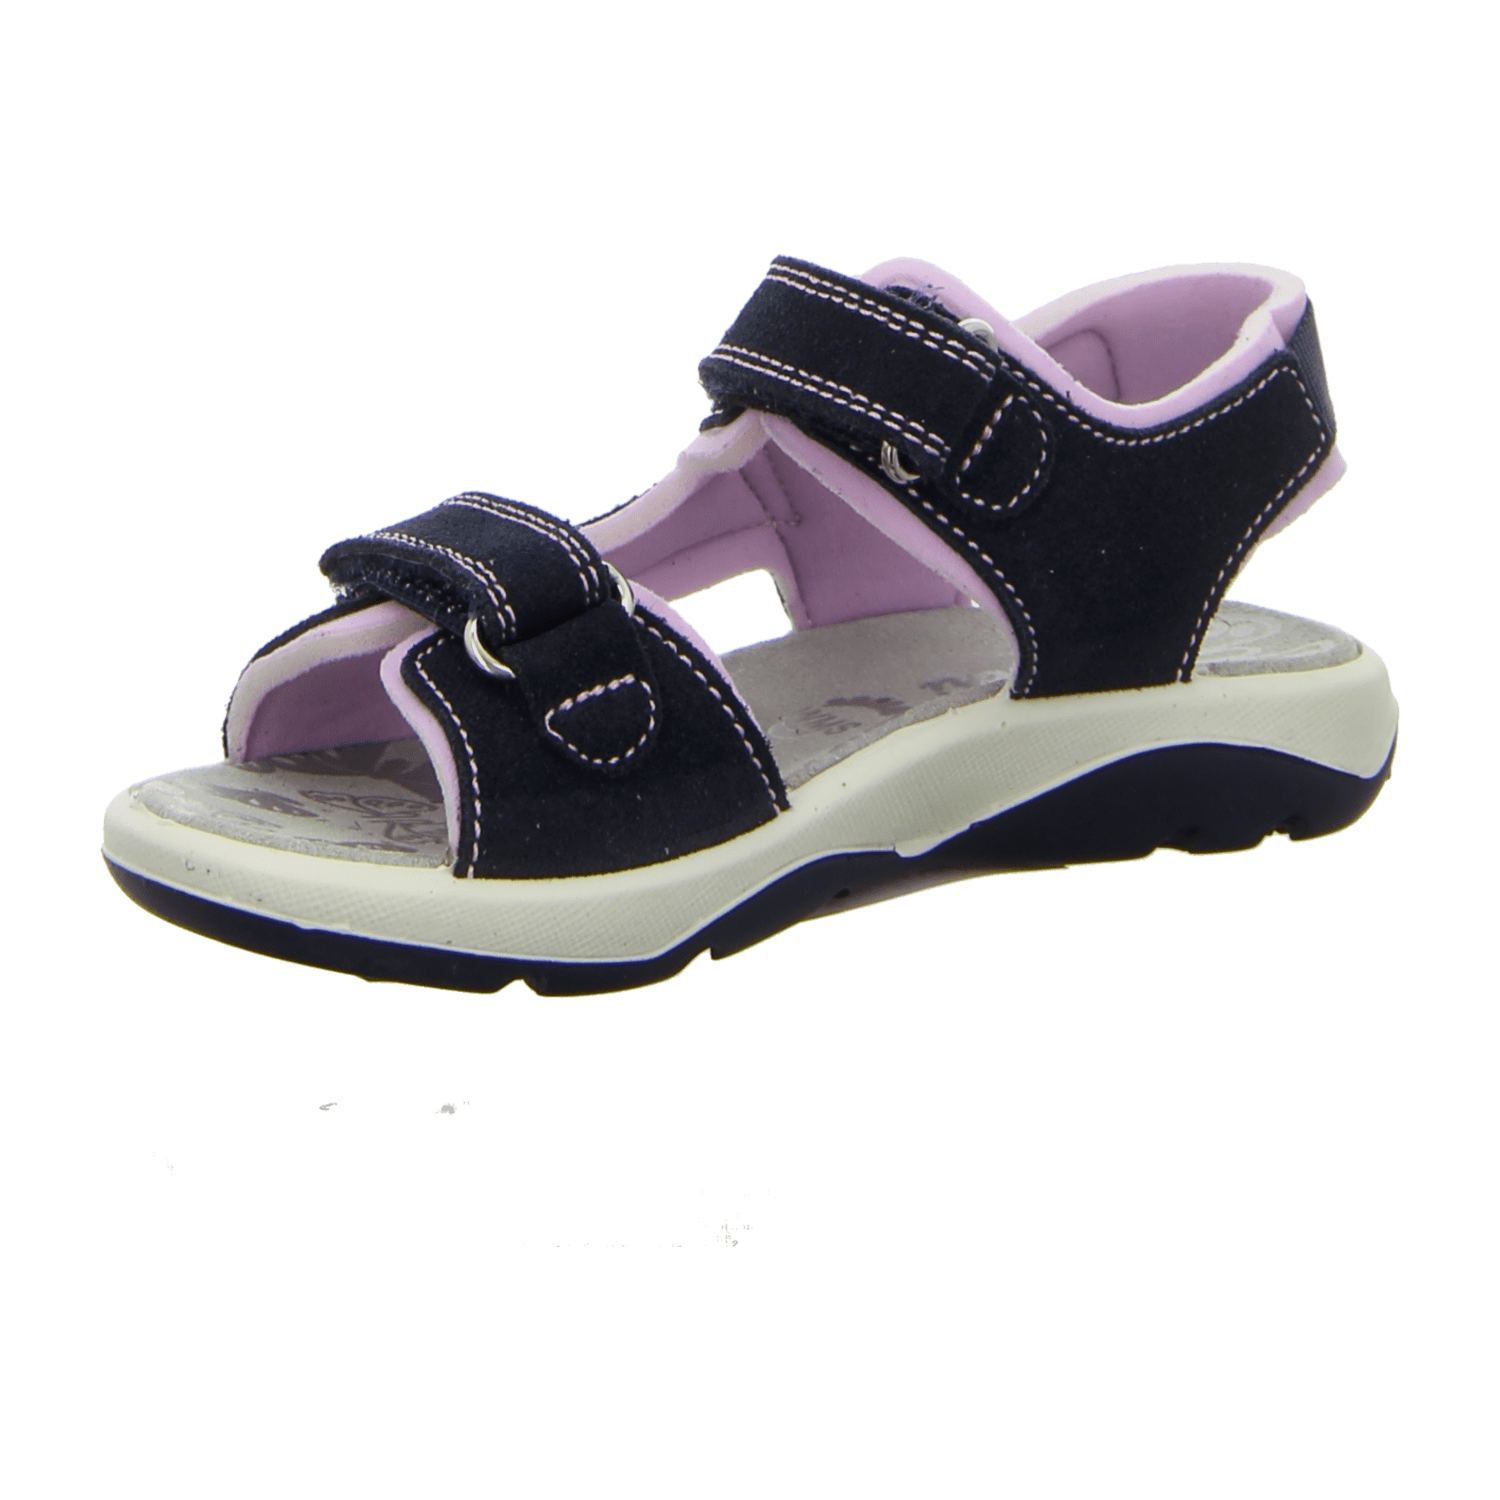 Lurchi Kinder Sandalen für Mädchen kaufen